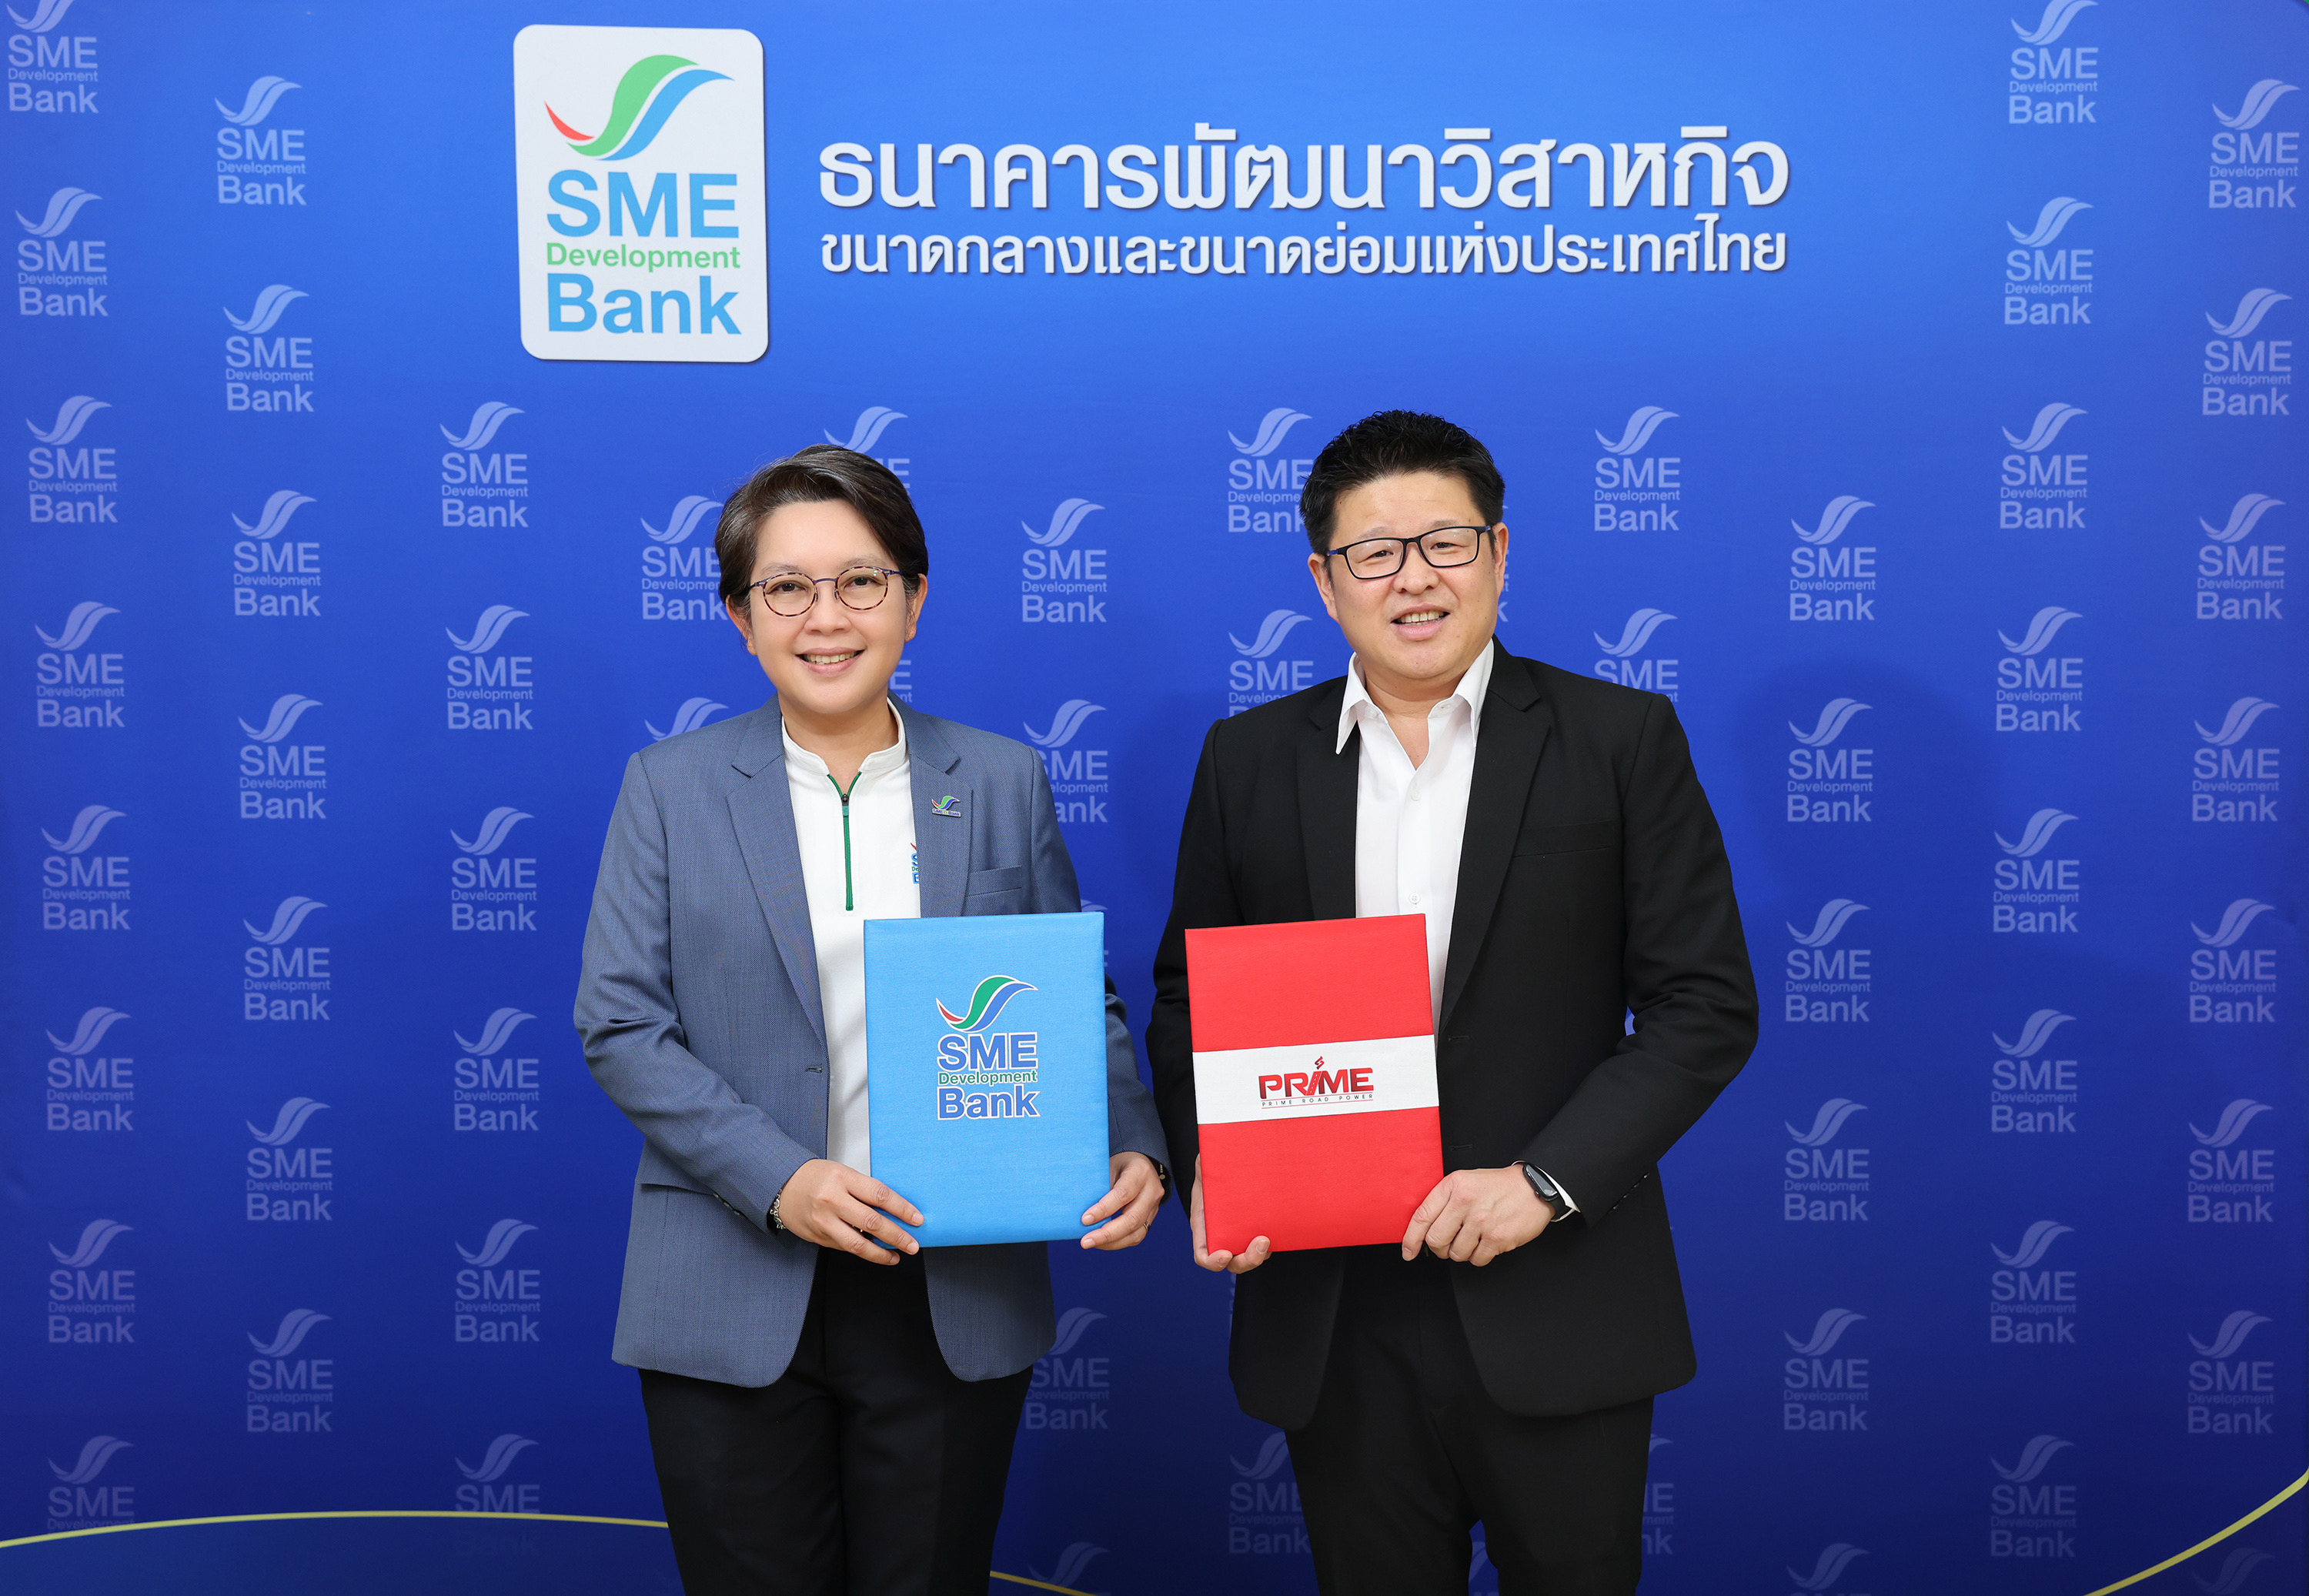 SME D Bankจับมือ ‘PRIME’ ยกระดับเอสเอ็มอีใช้พลังงานทดแทน พัฒนาธุรกิจสู่ความยั่งยืน